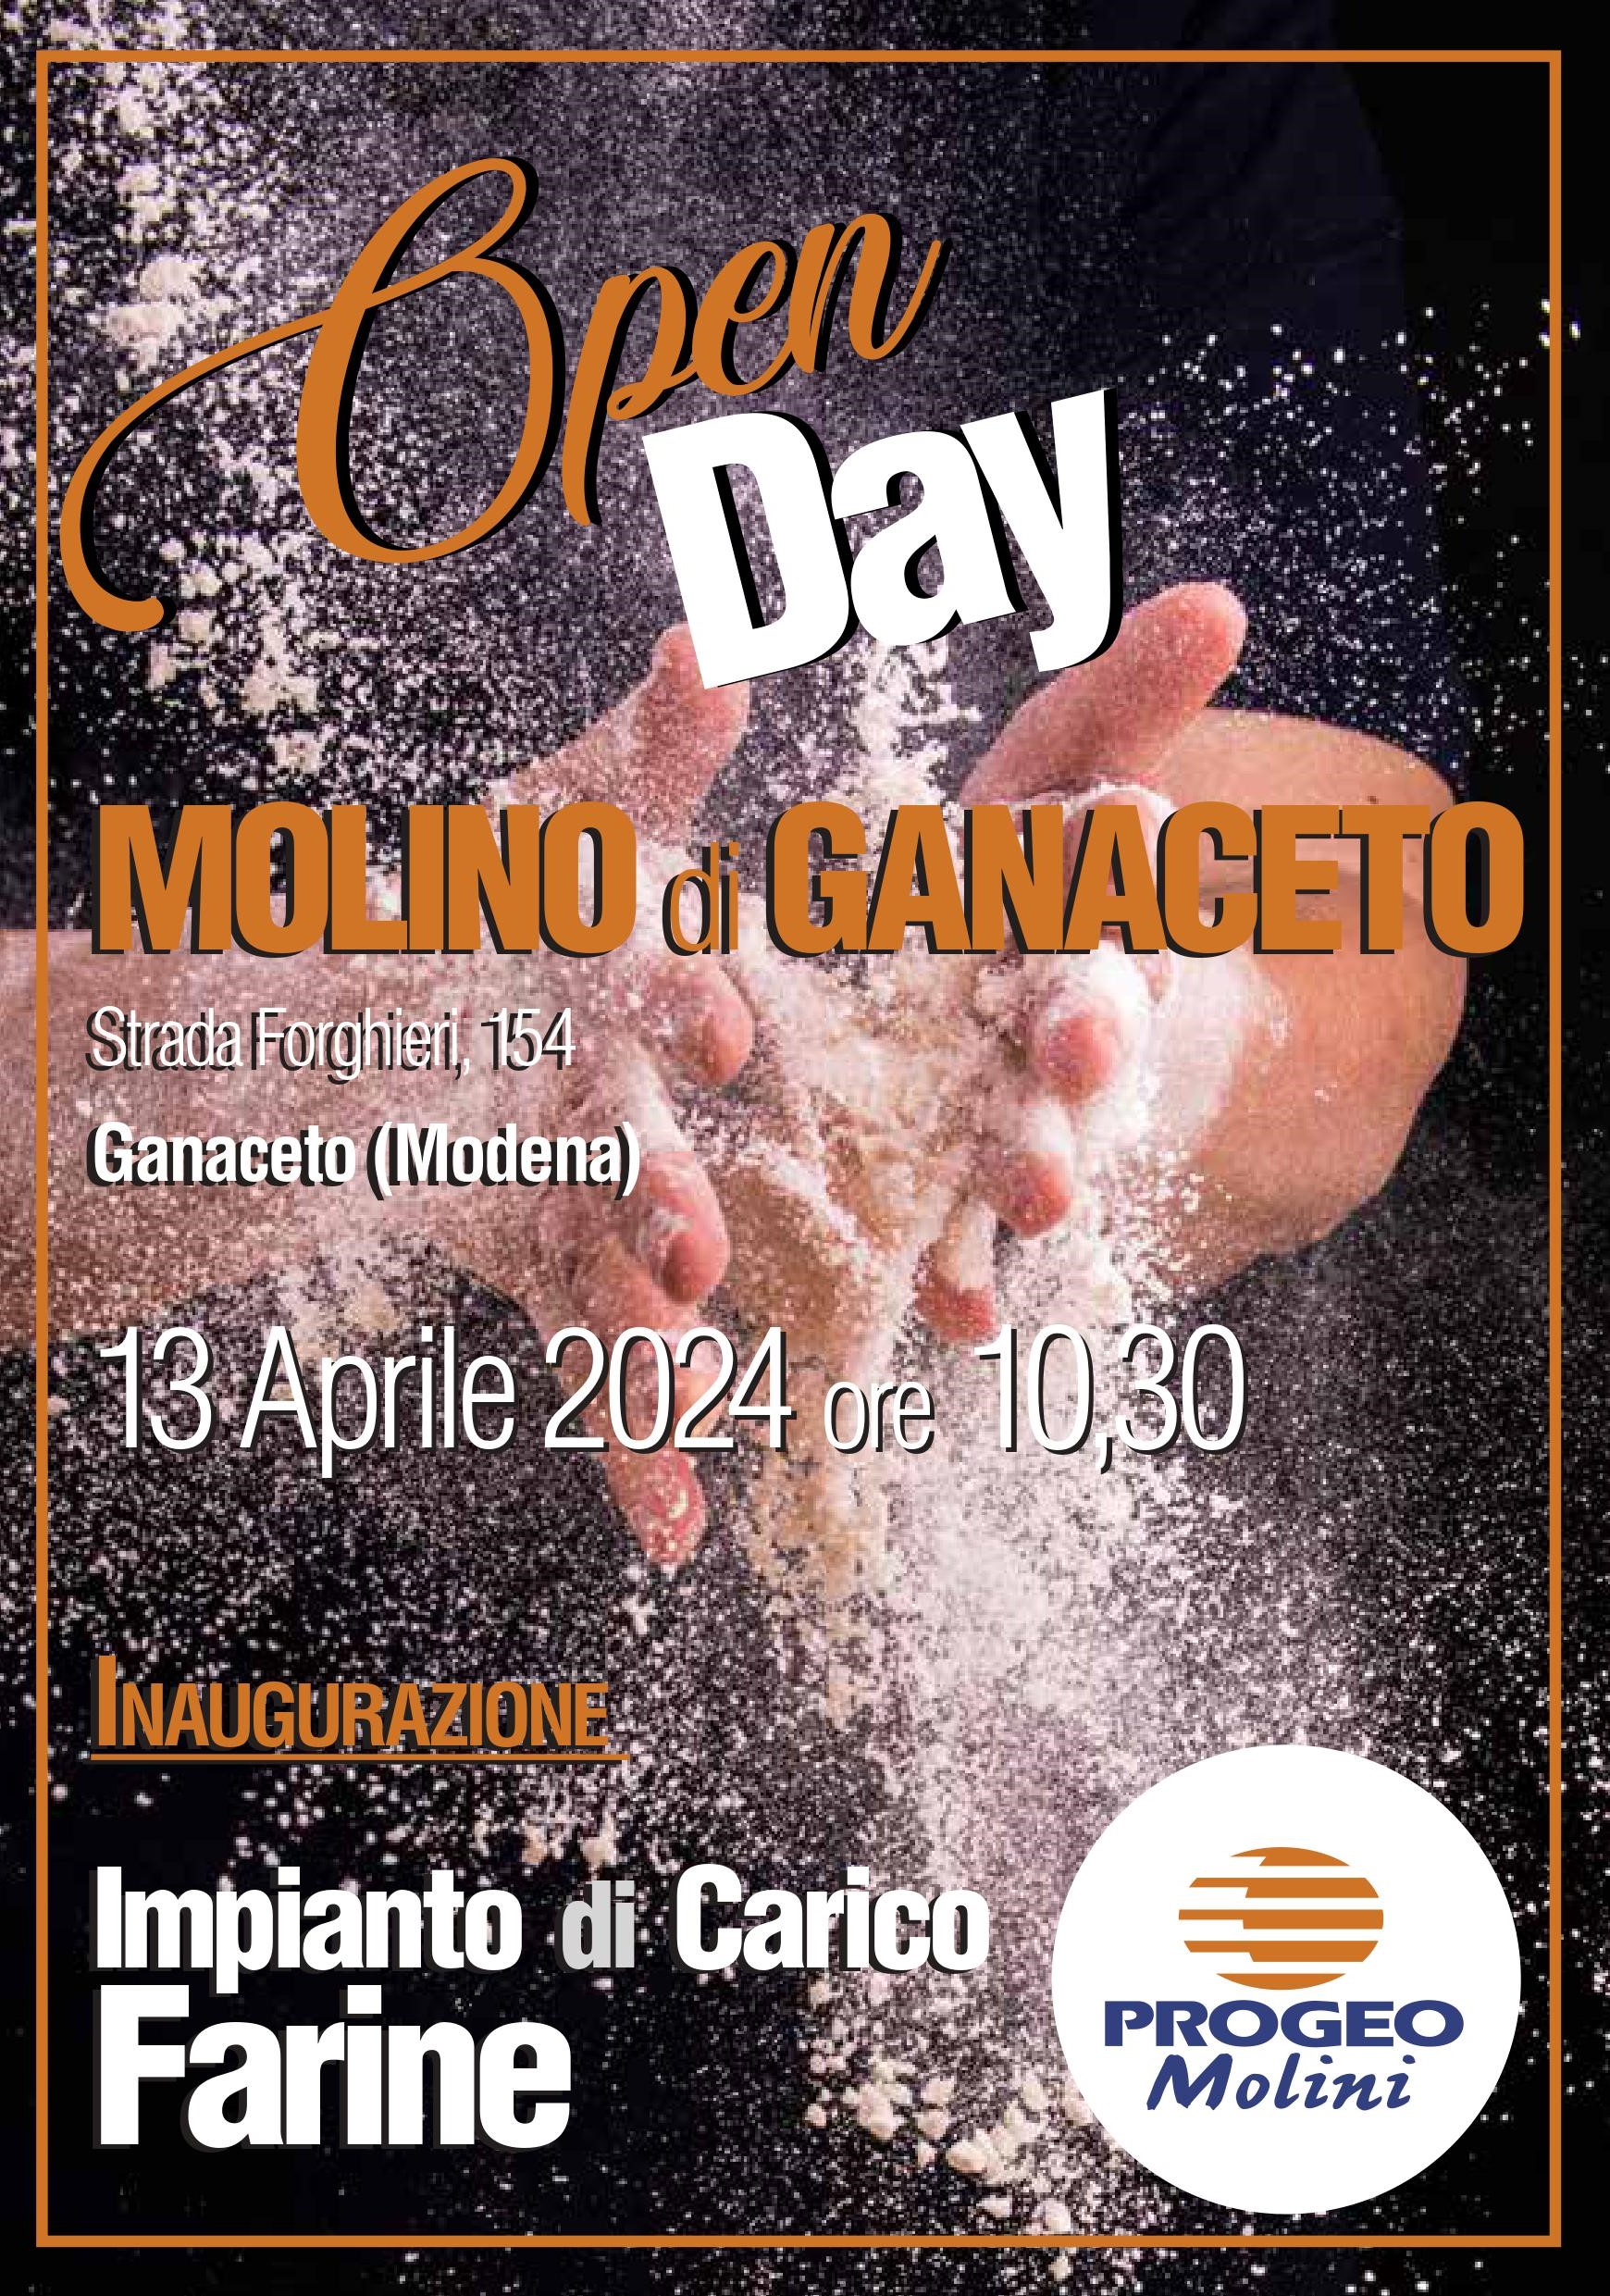 Inaugurazione Molino Progeo a Ganaceto di Modena, sabato 13 aprile